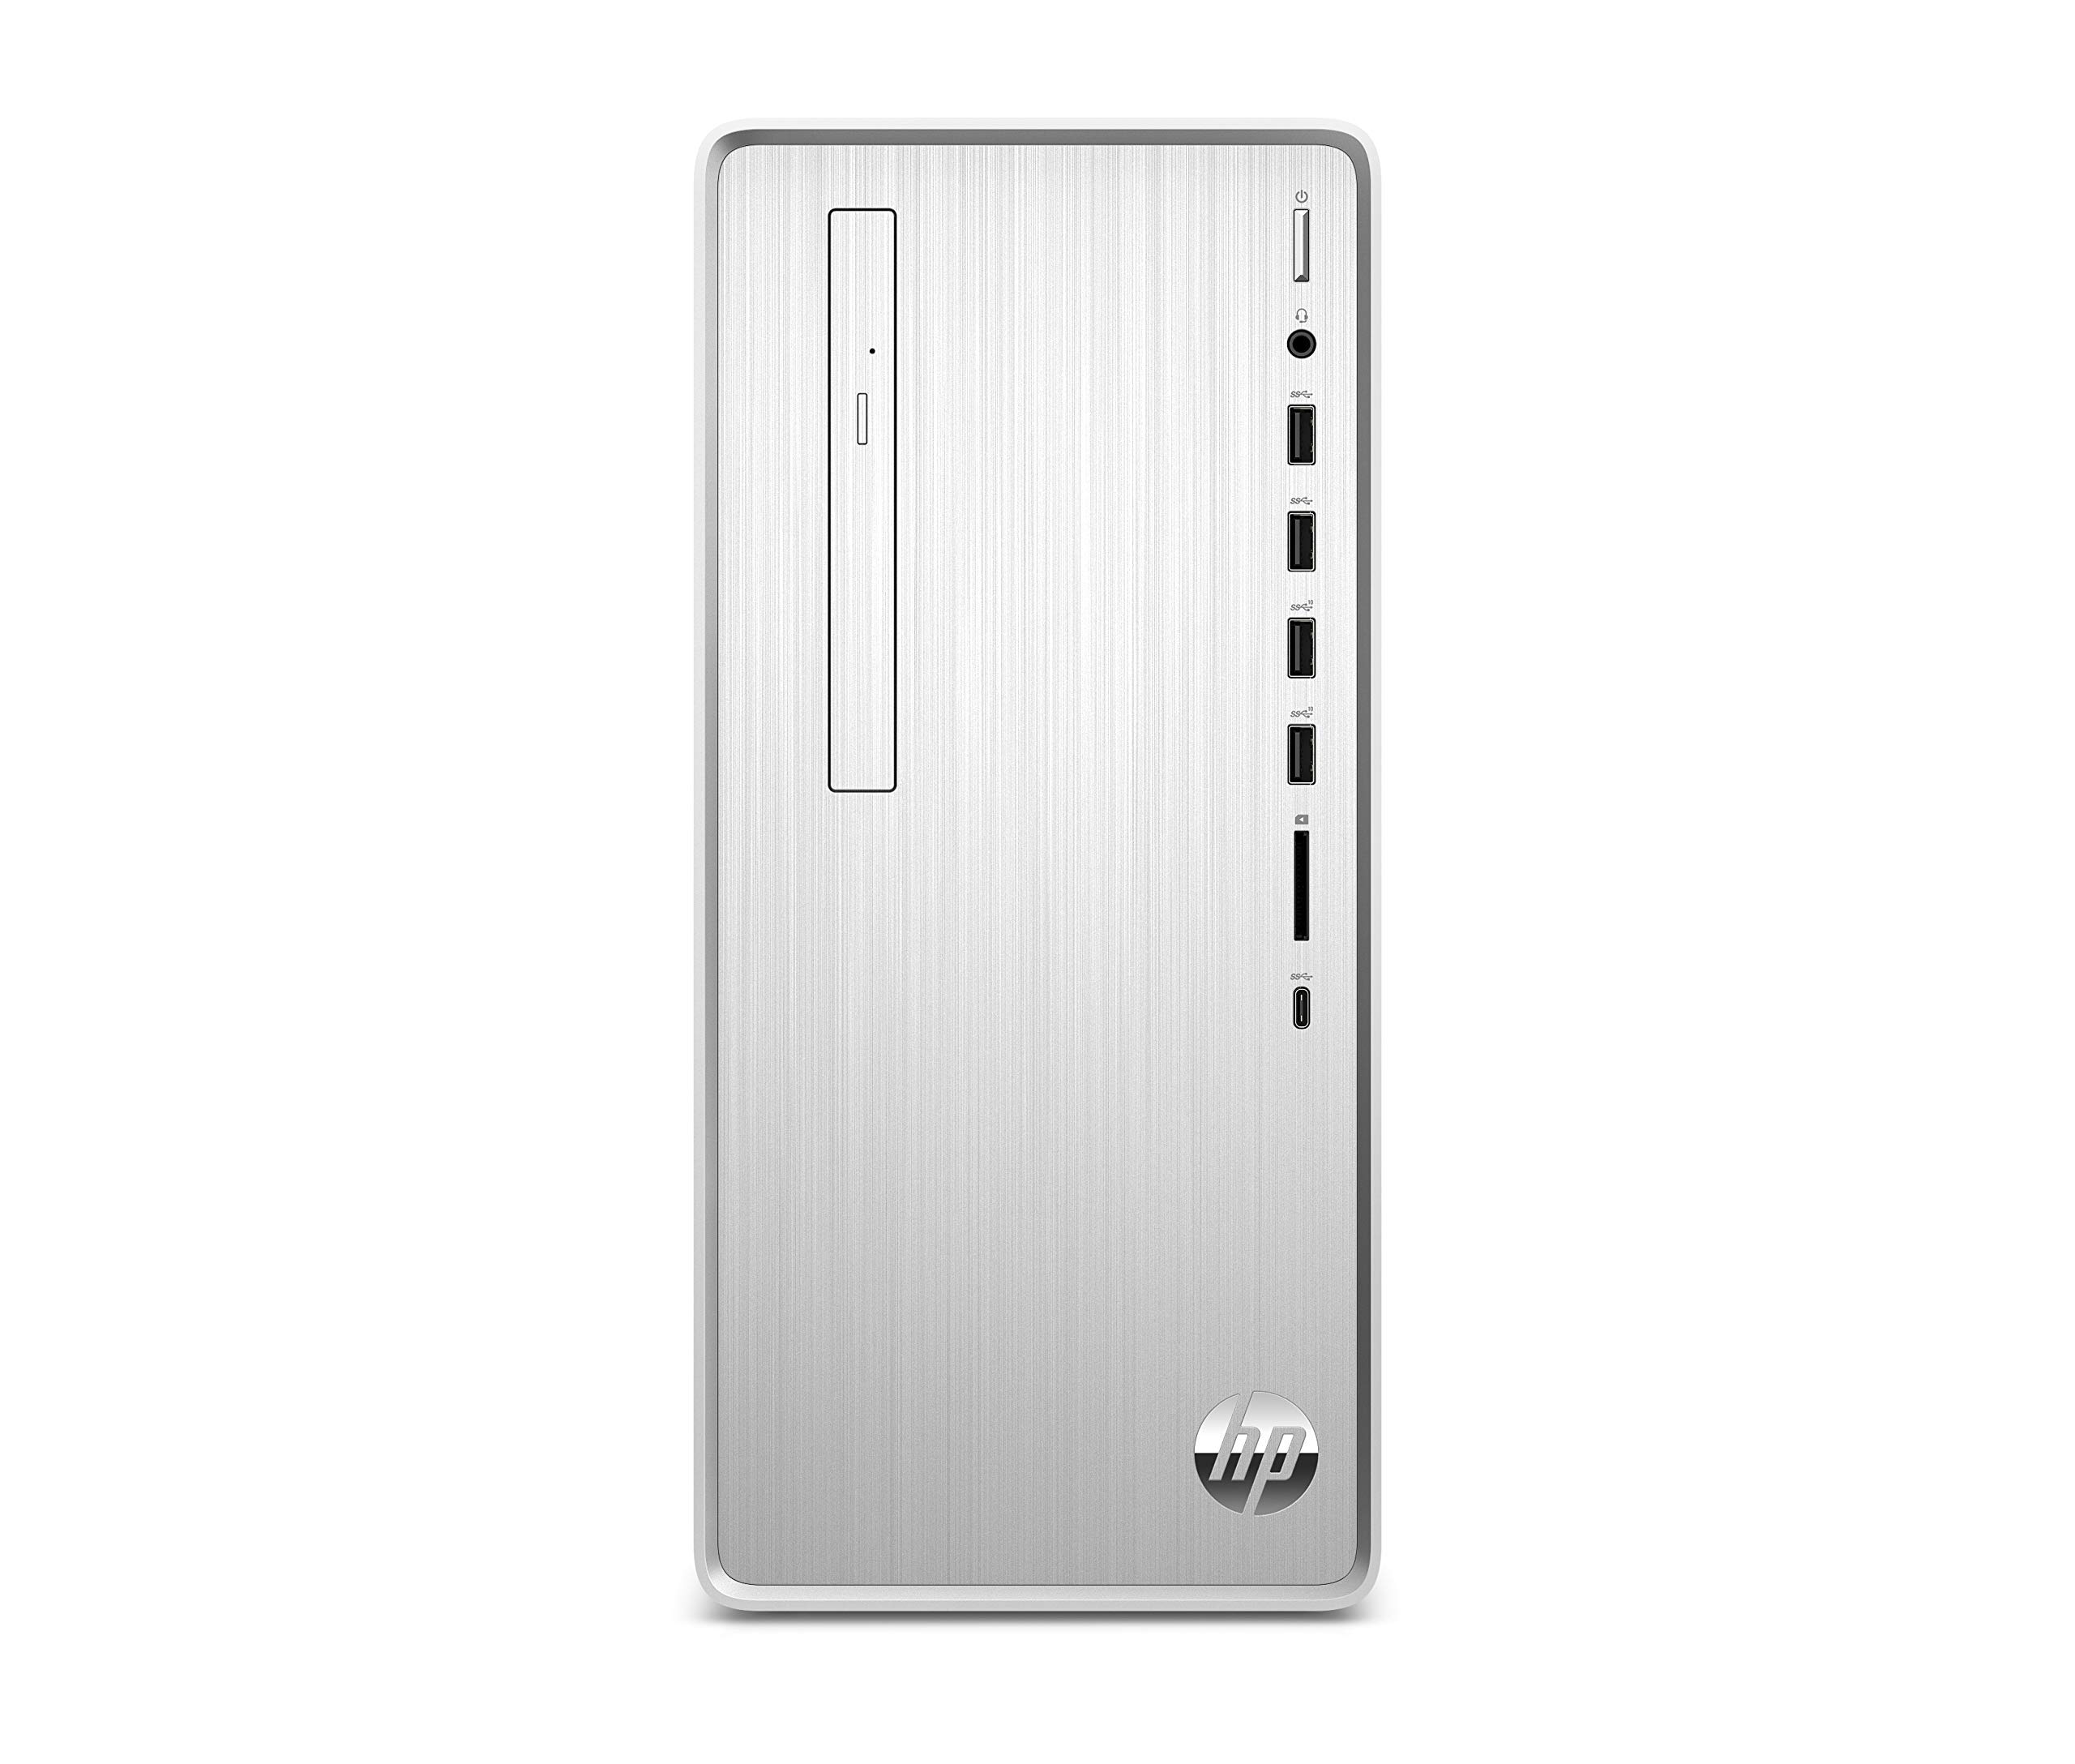 HP Pavilion TP01-0050 Intel Core i5-9400 12GB RAM 1TB HDD 256GB Desktop PC (Renewed)